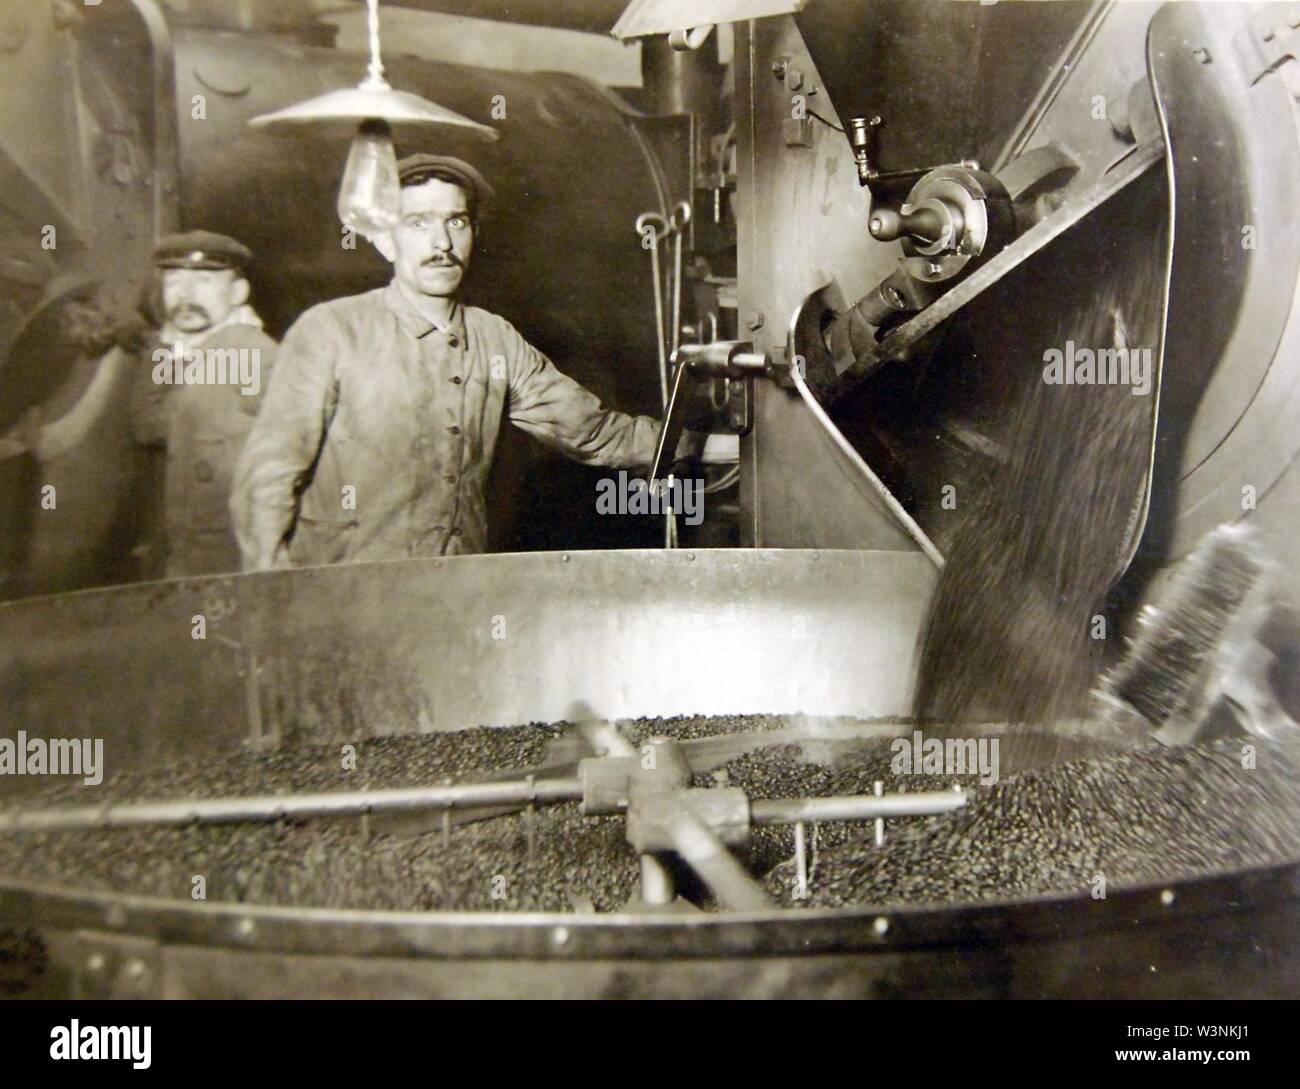 Kaffee von Fallen, die röstmaschine in einem kühleren, Essonnes, Frankreich, 1918 (32147807935). Stockfoto